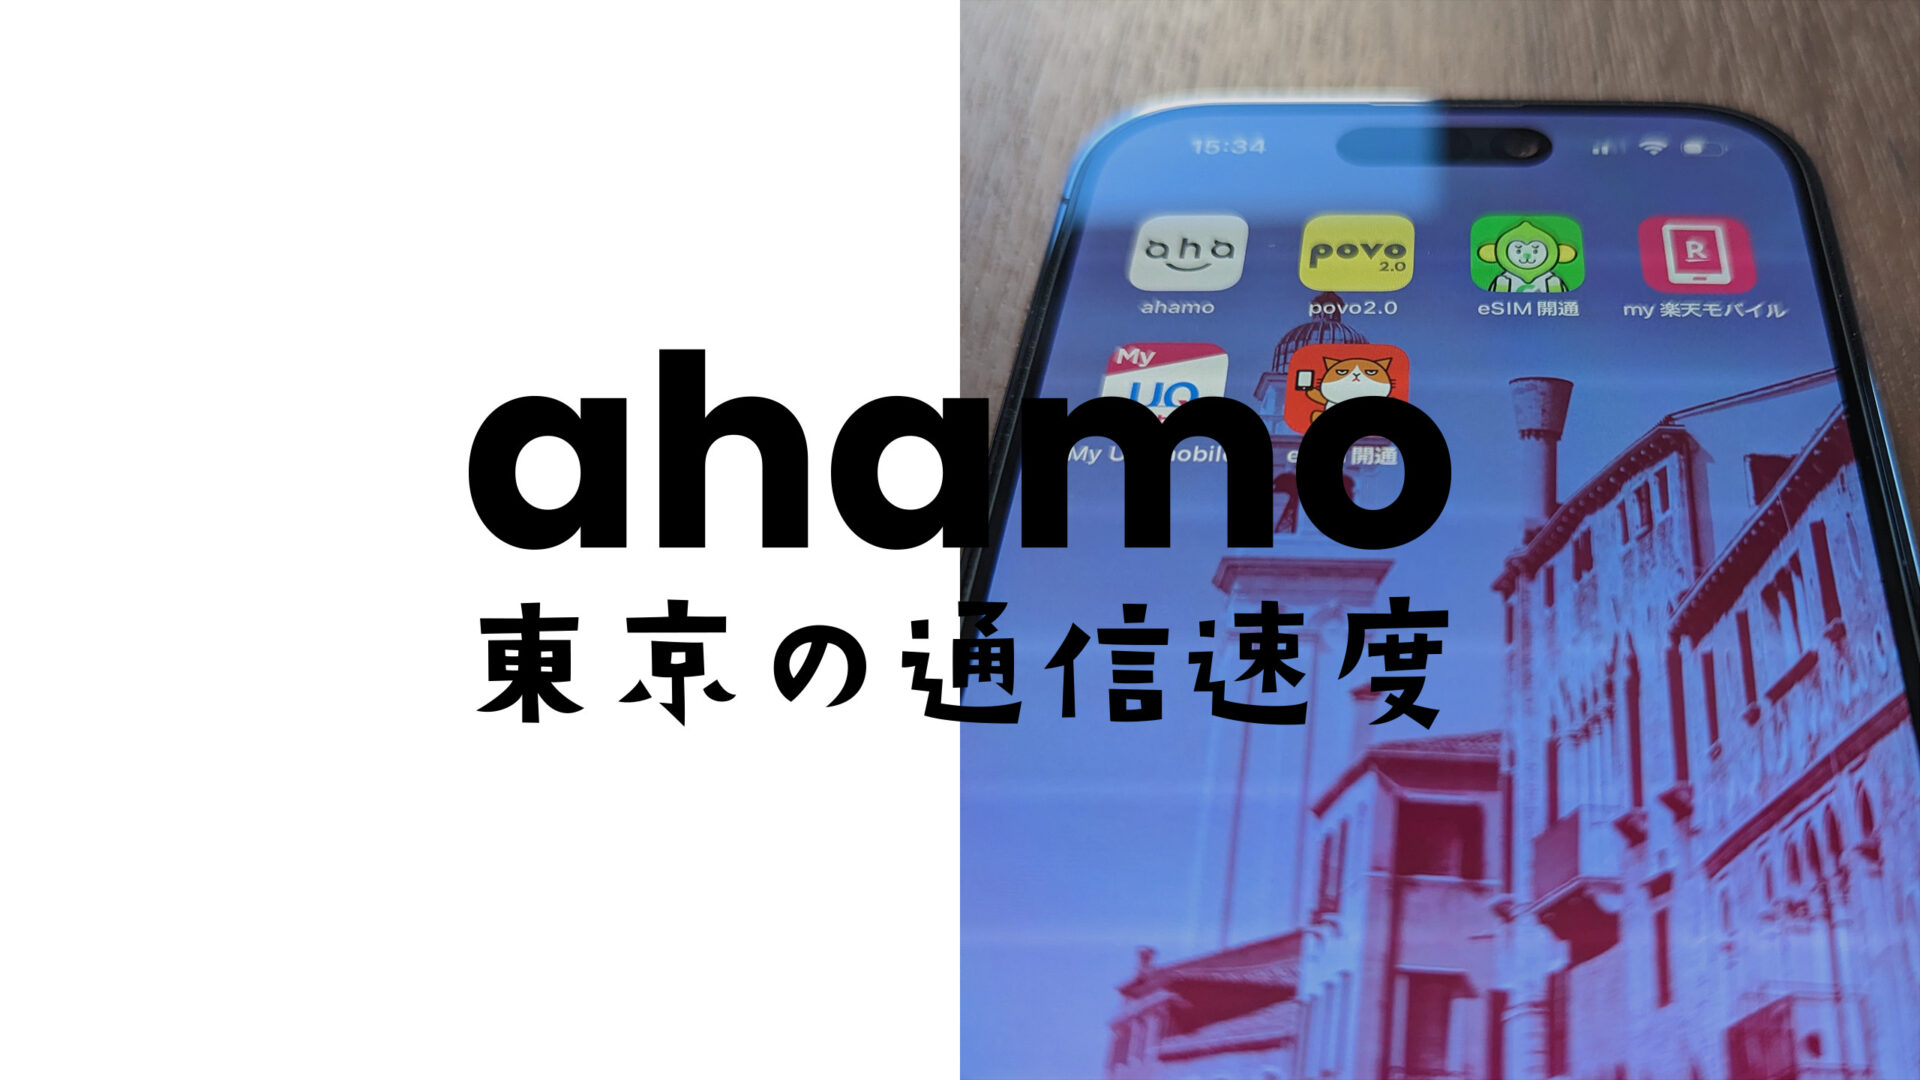 ahamo(アハモ)の東京都内&23区の通信速度の実測値平均データ。電波を比較。のサムネイル画像